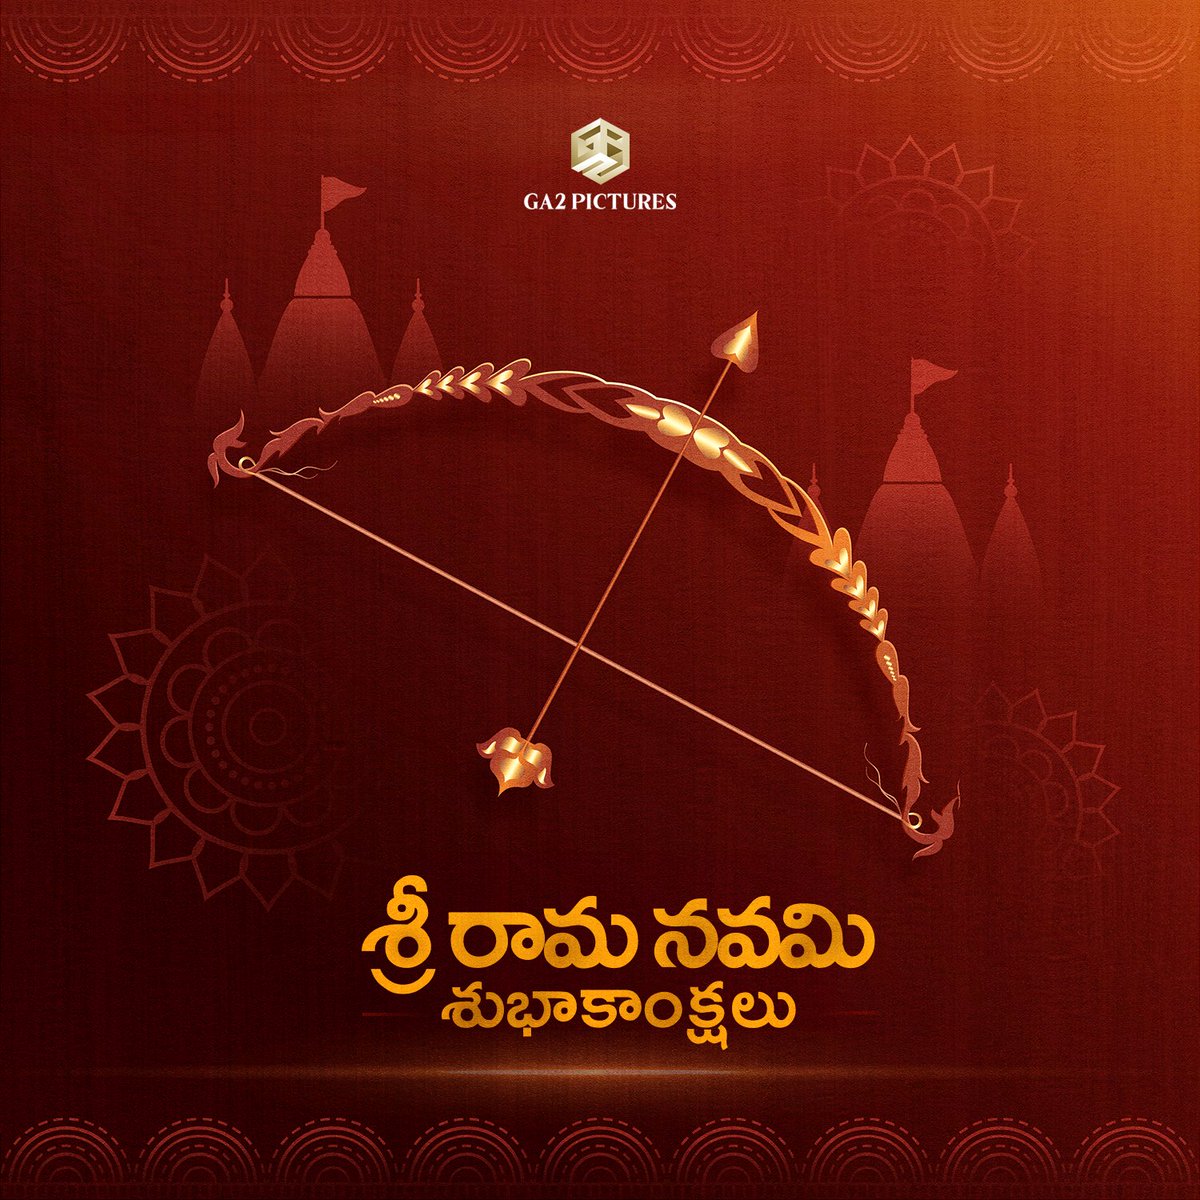 మీకు మీ కుటుంబ సభ్యులందరికీ శ్రీరామనవమి శుభాకాంక్షలు🙏✨️ Happy Rama Navami to all! May Lord Rama bless us all with happiness, peace and prosperity 🕉 #SriRamaNavami #JaiShriRam